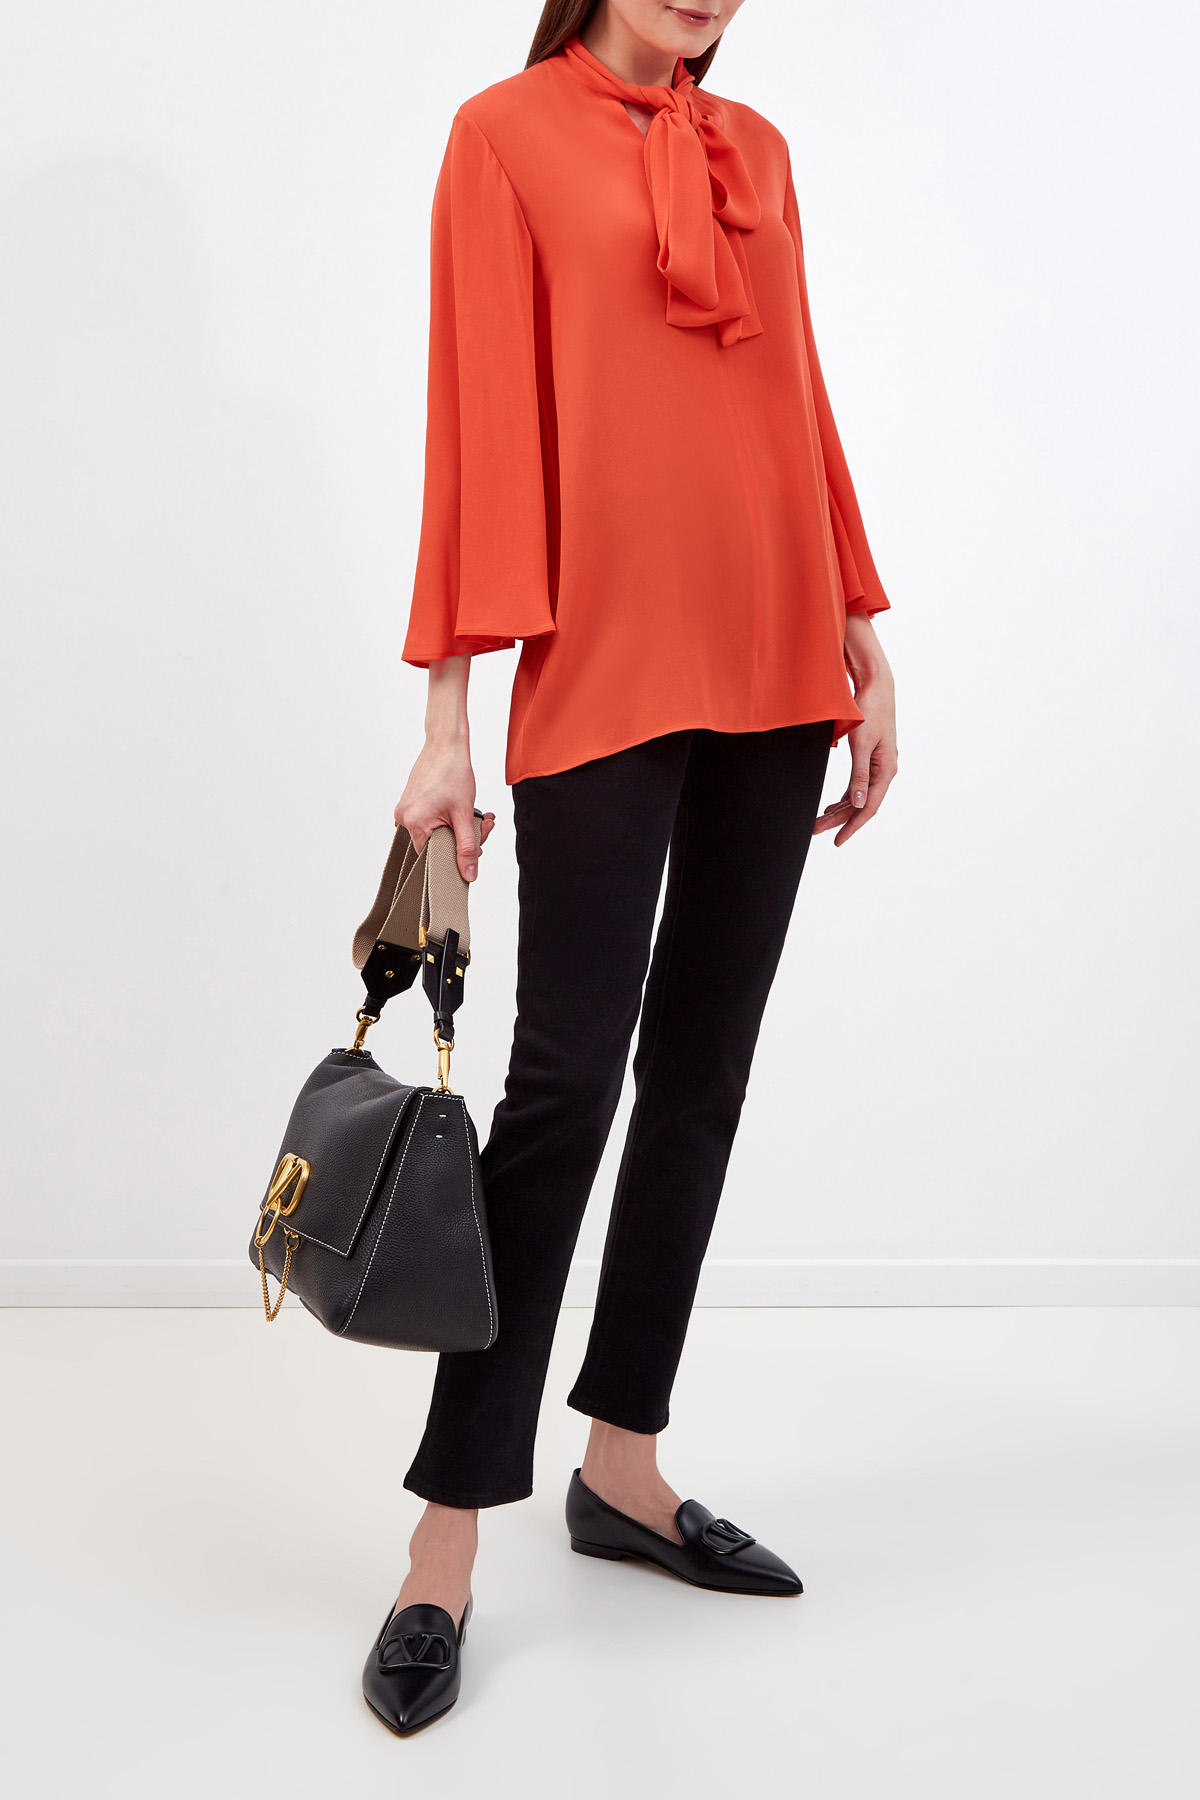 Шелковая блуза из коллекции Neonature с рукавами-клеш VALENTINO, цвет оранжевый, размер 40;42;44;38 - фото 2